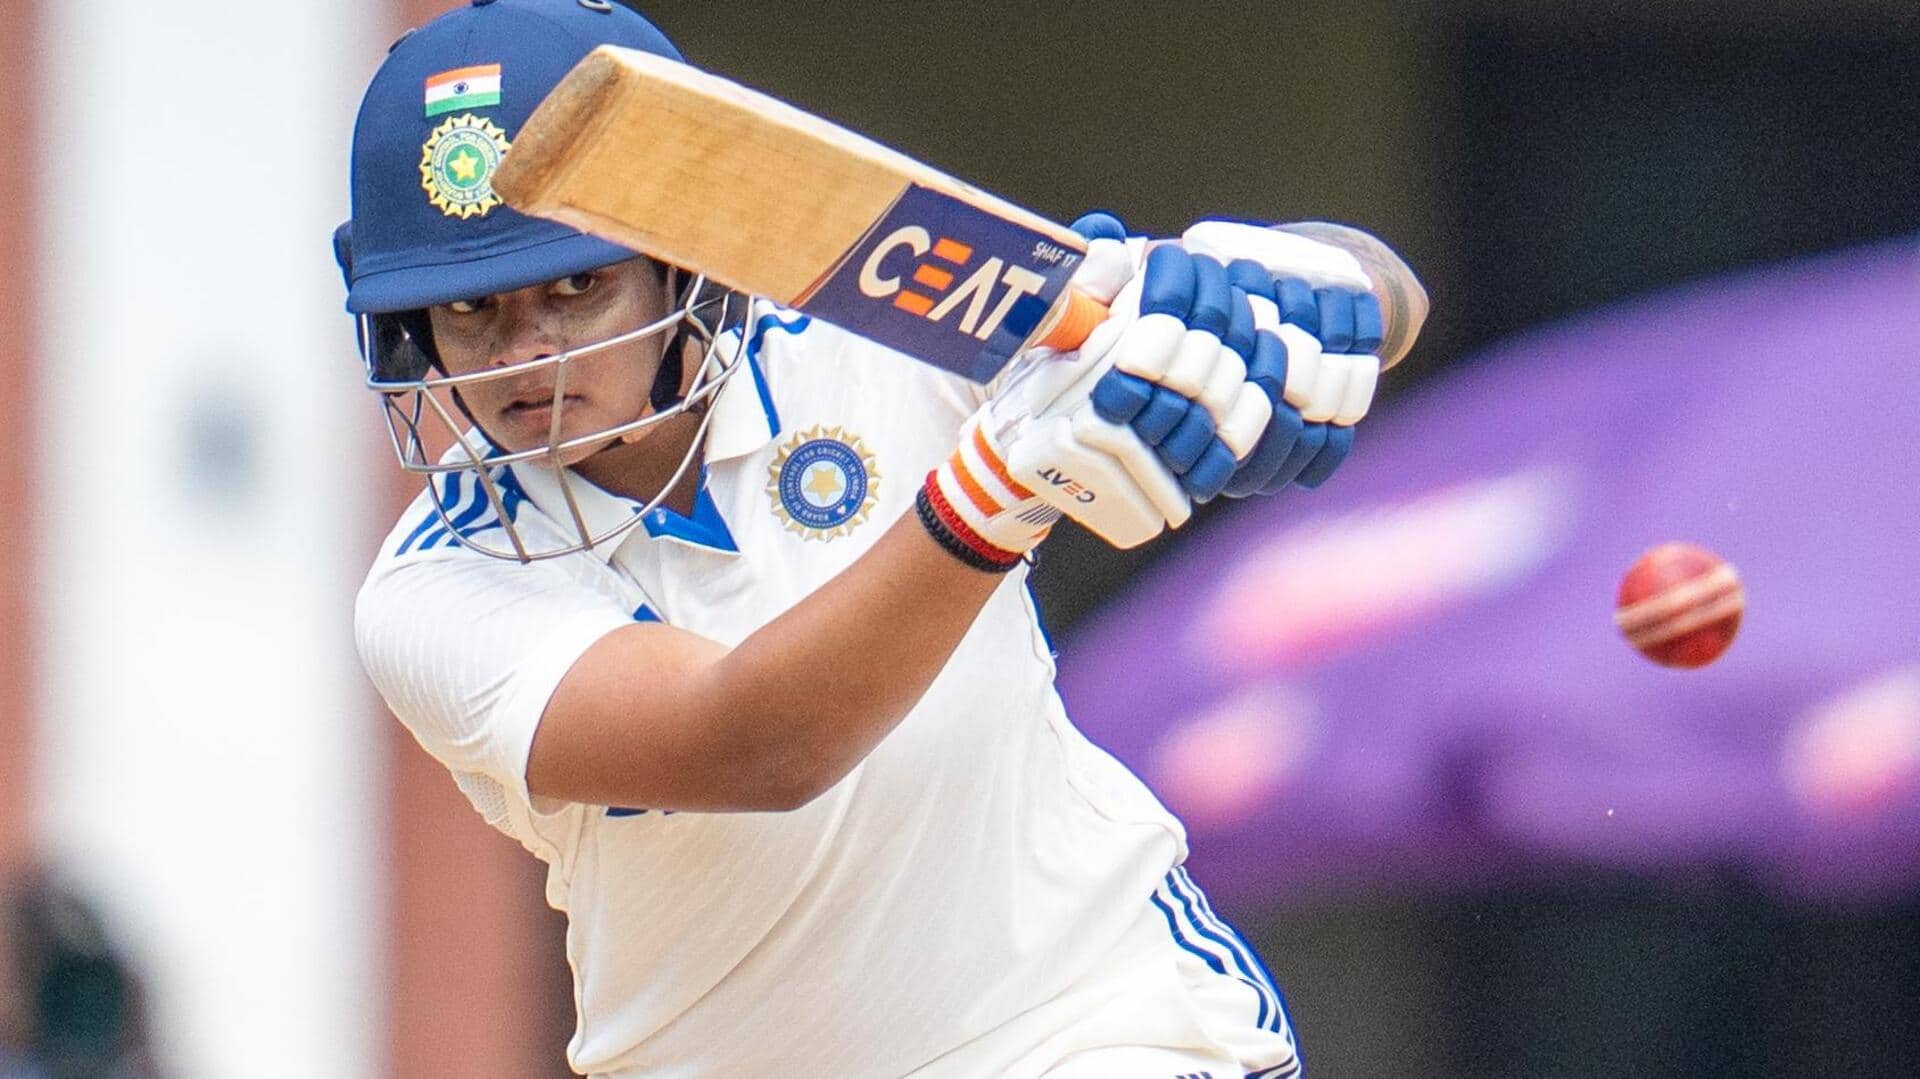 भारत बनाम दक्षिण अफ्रीका: शफाली वर्मा ने जड़ा पहला टेस्ट शतक, ये बनाए रिकॉर्ड्स